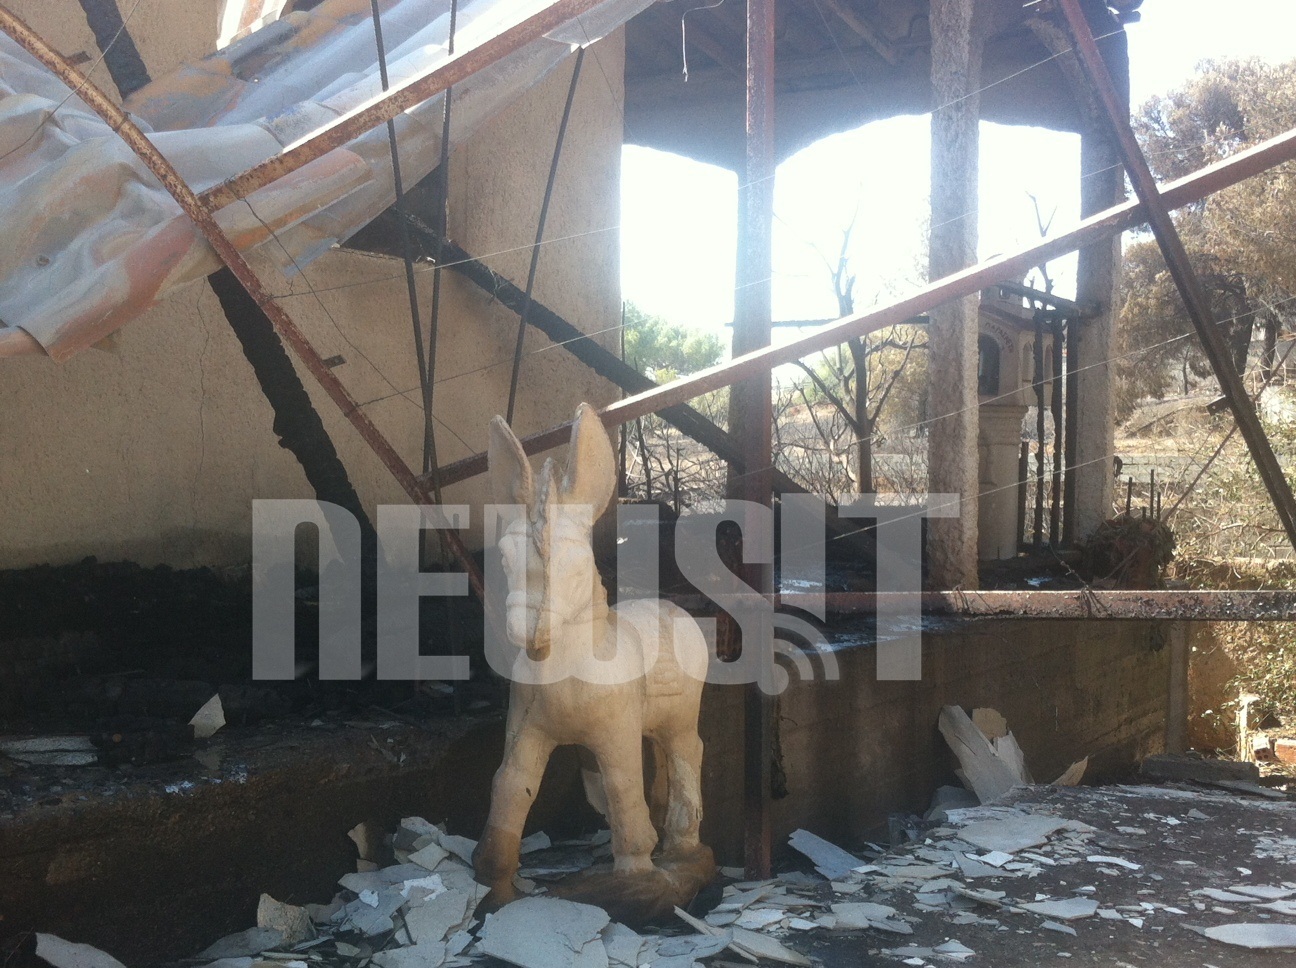 To παιδικο ξύλινο αλογάκι του κατεστραμμένου σπιτιού στη Σιντερίνα εμεινε για να θυμίζει τις ευτυχισμένες μέρες πριν την καταστροφική φωτιά